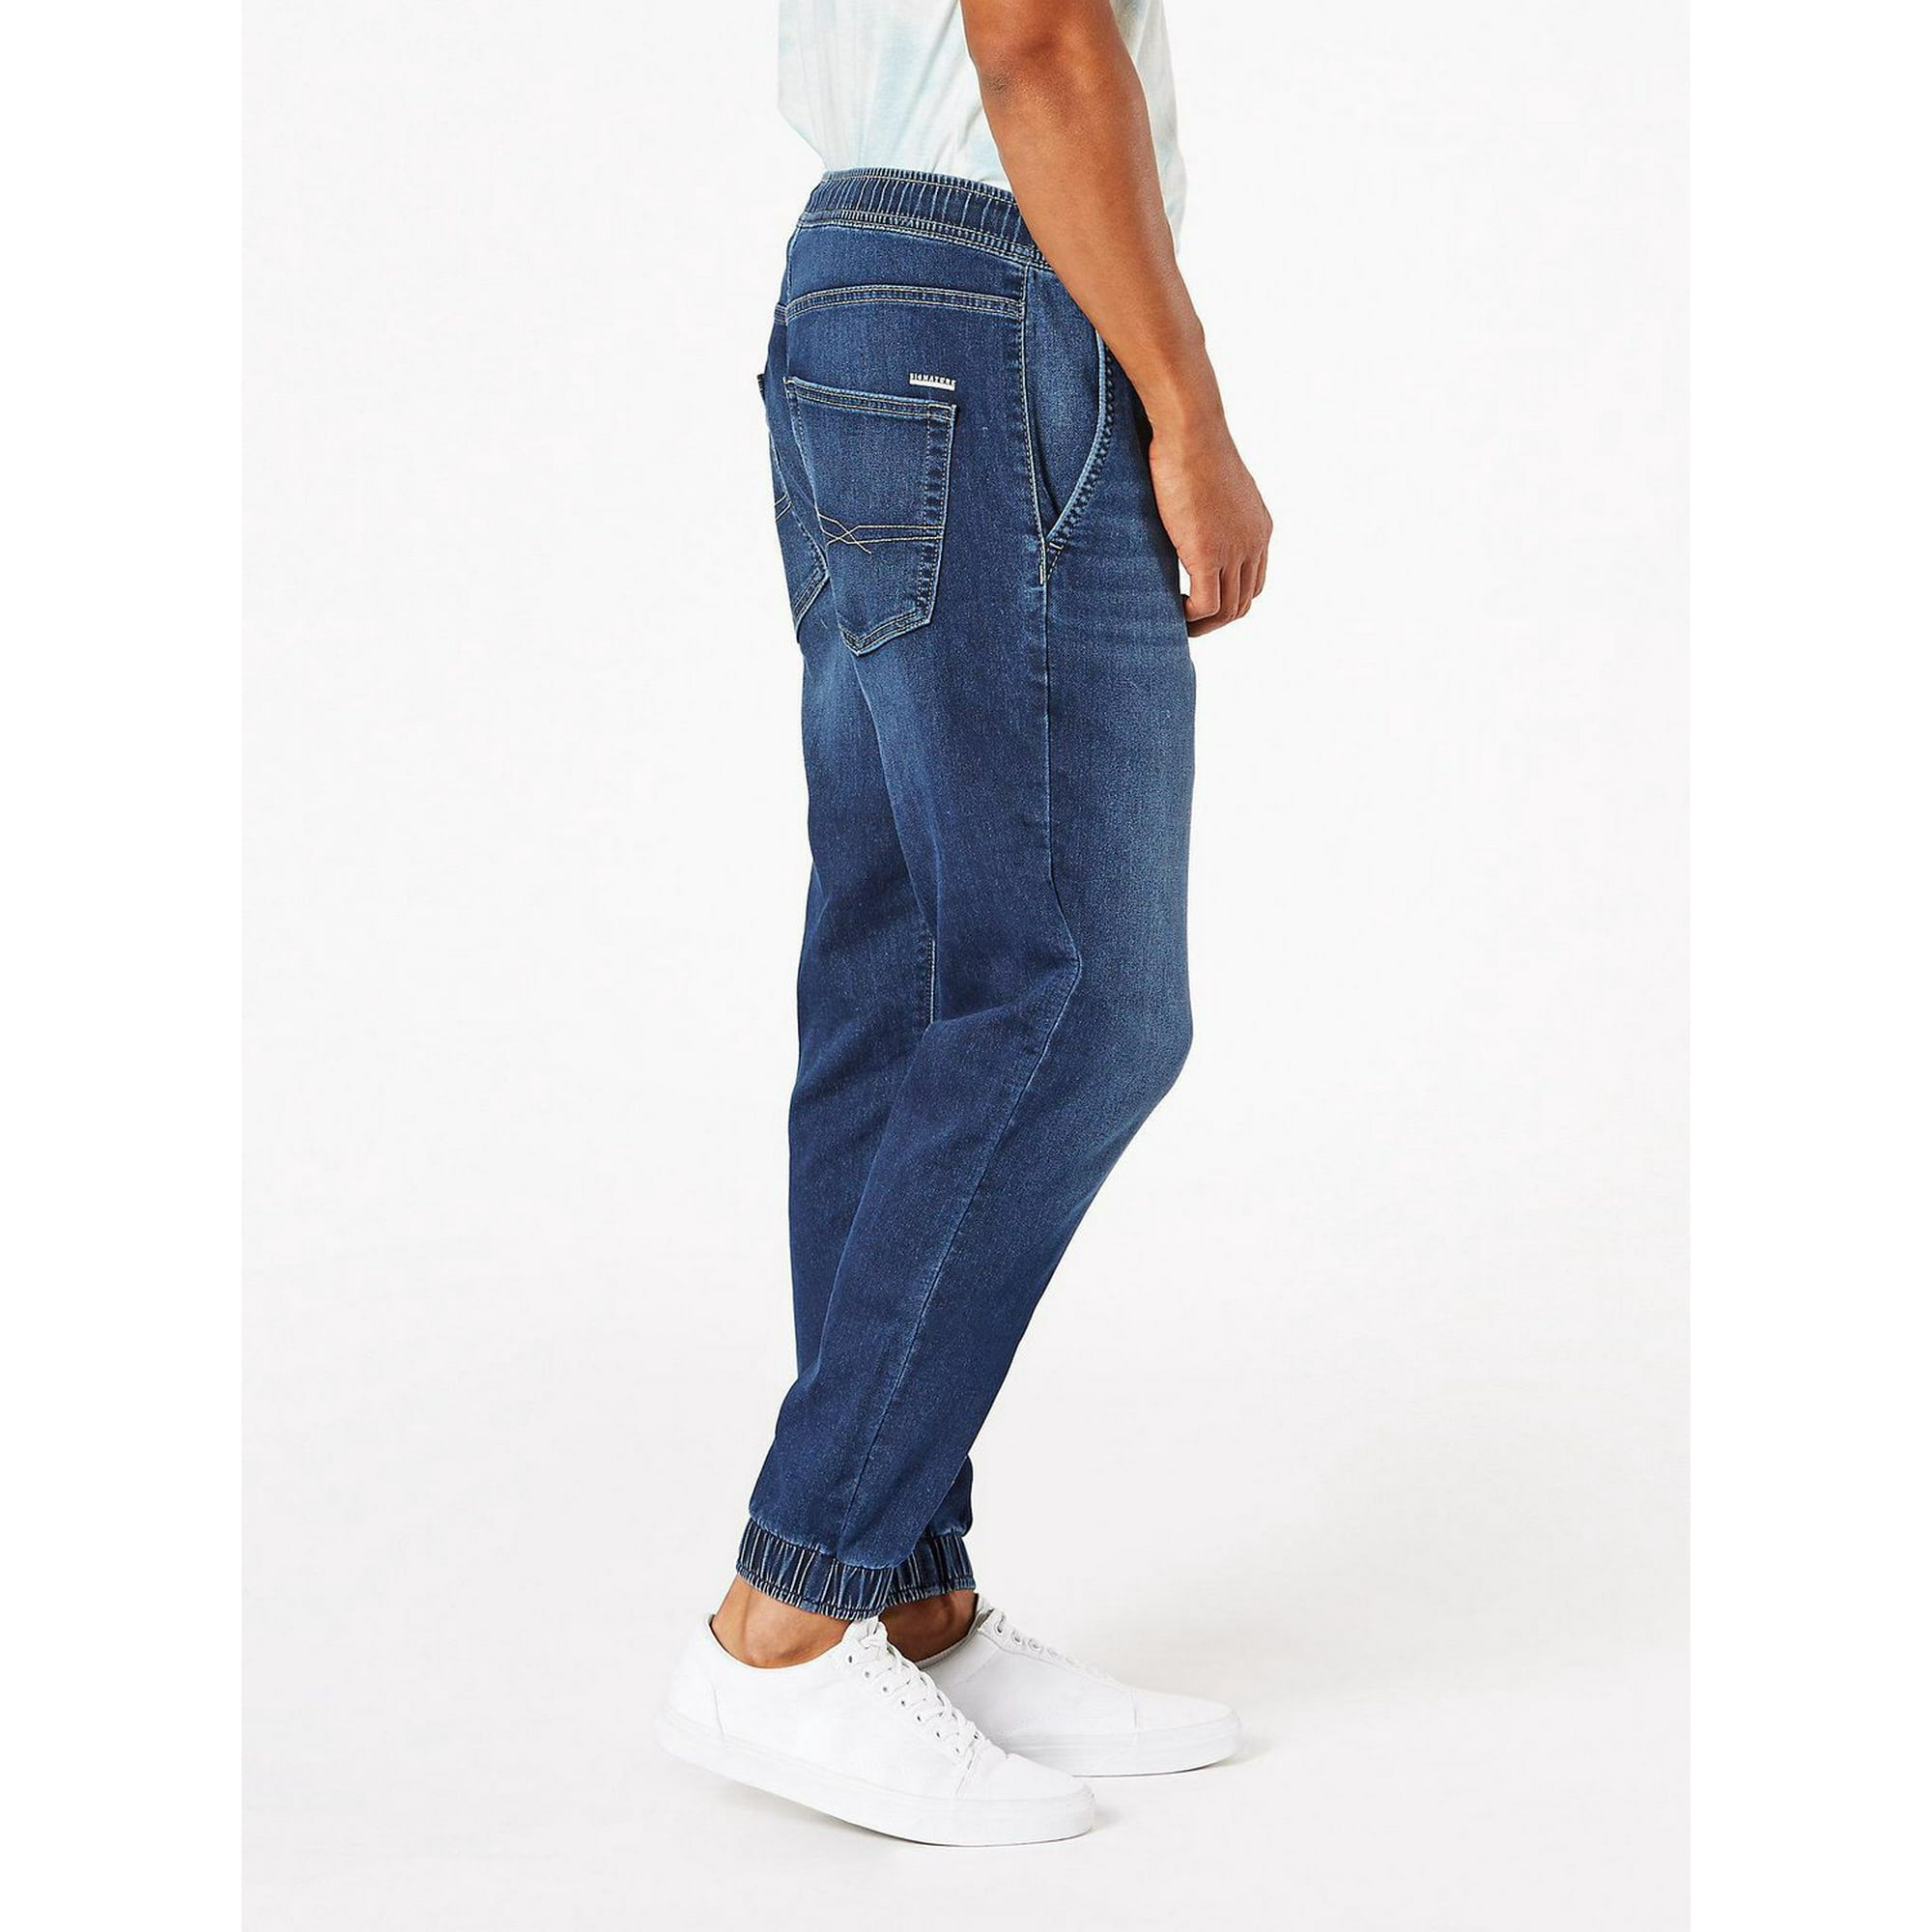 Men's Bottoms: Jeans, Joggers, Pants & Shorts